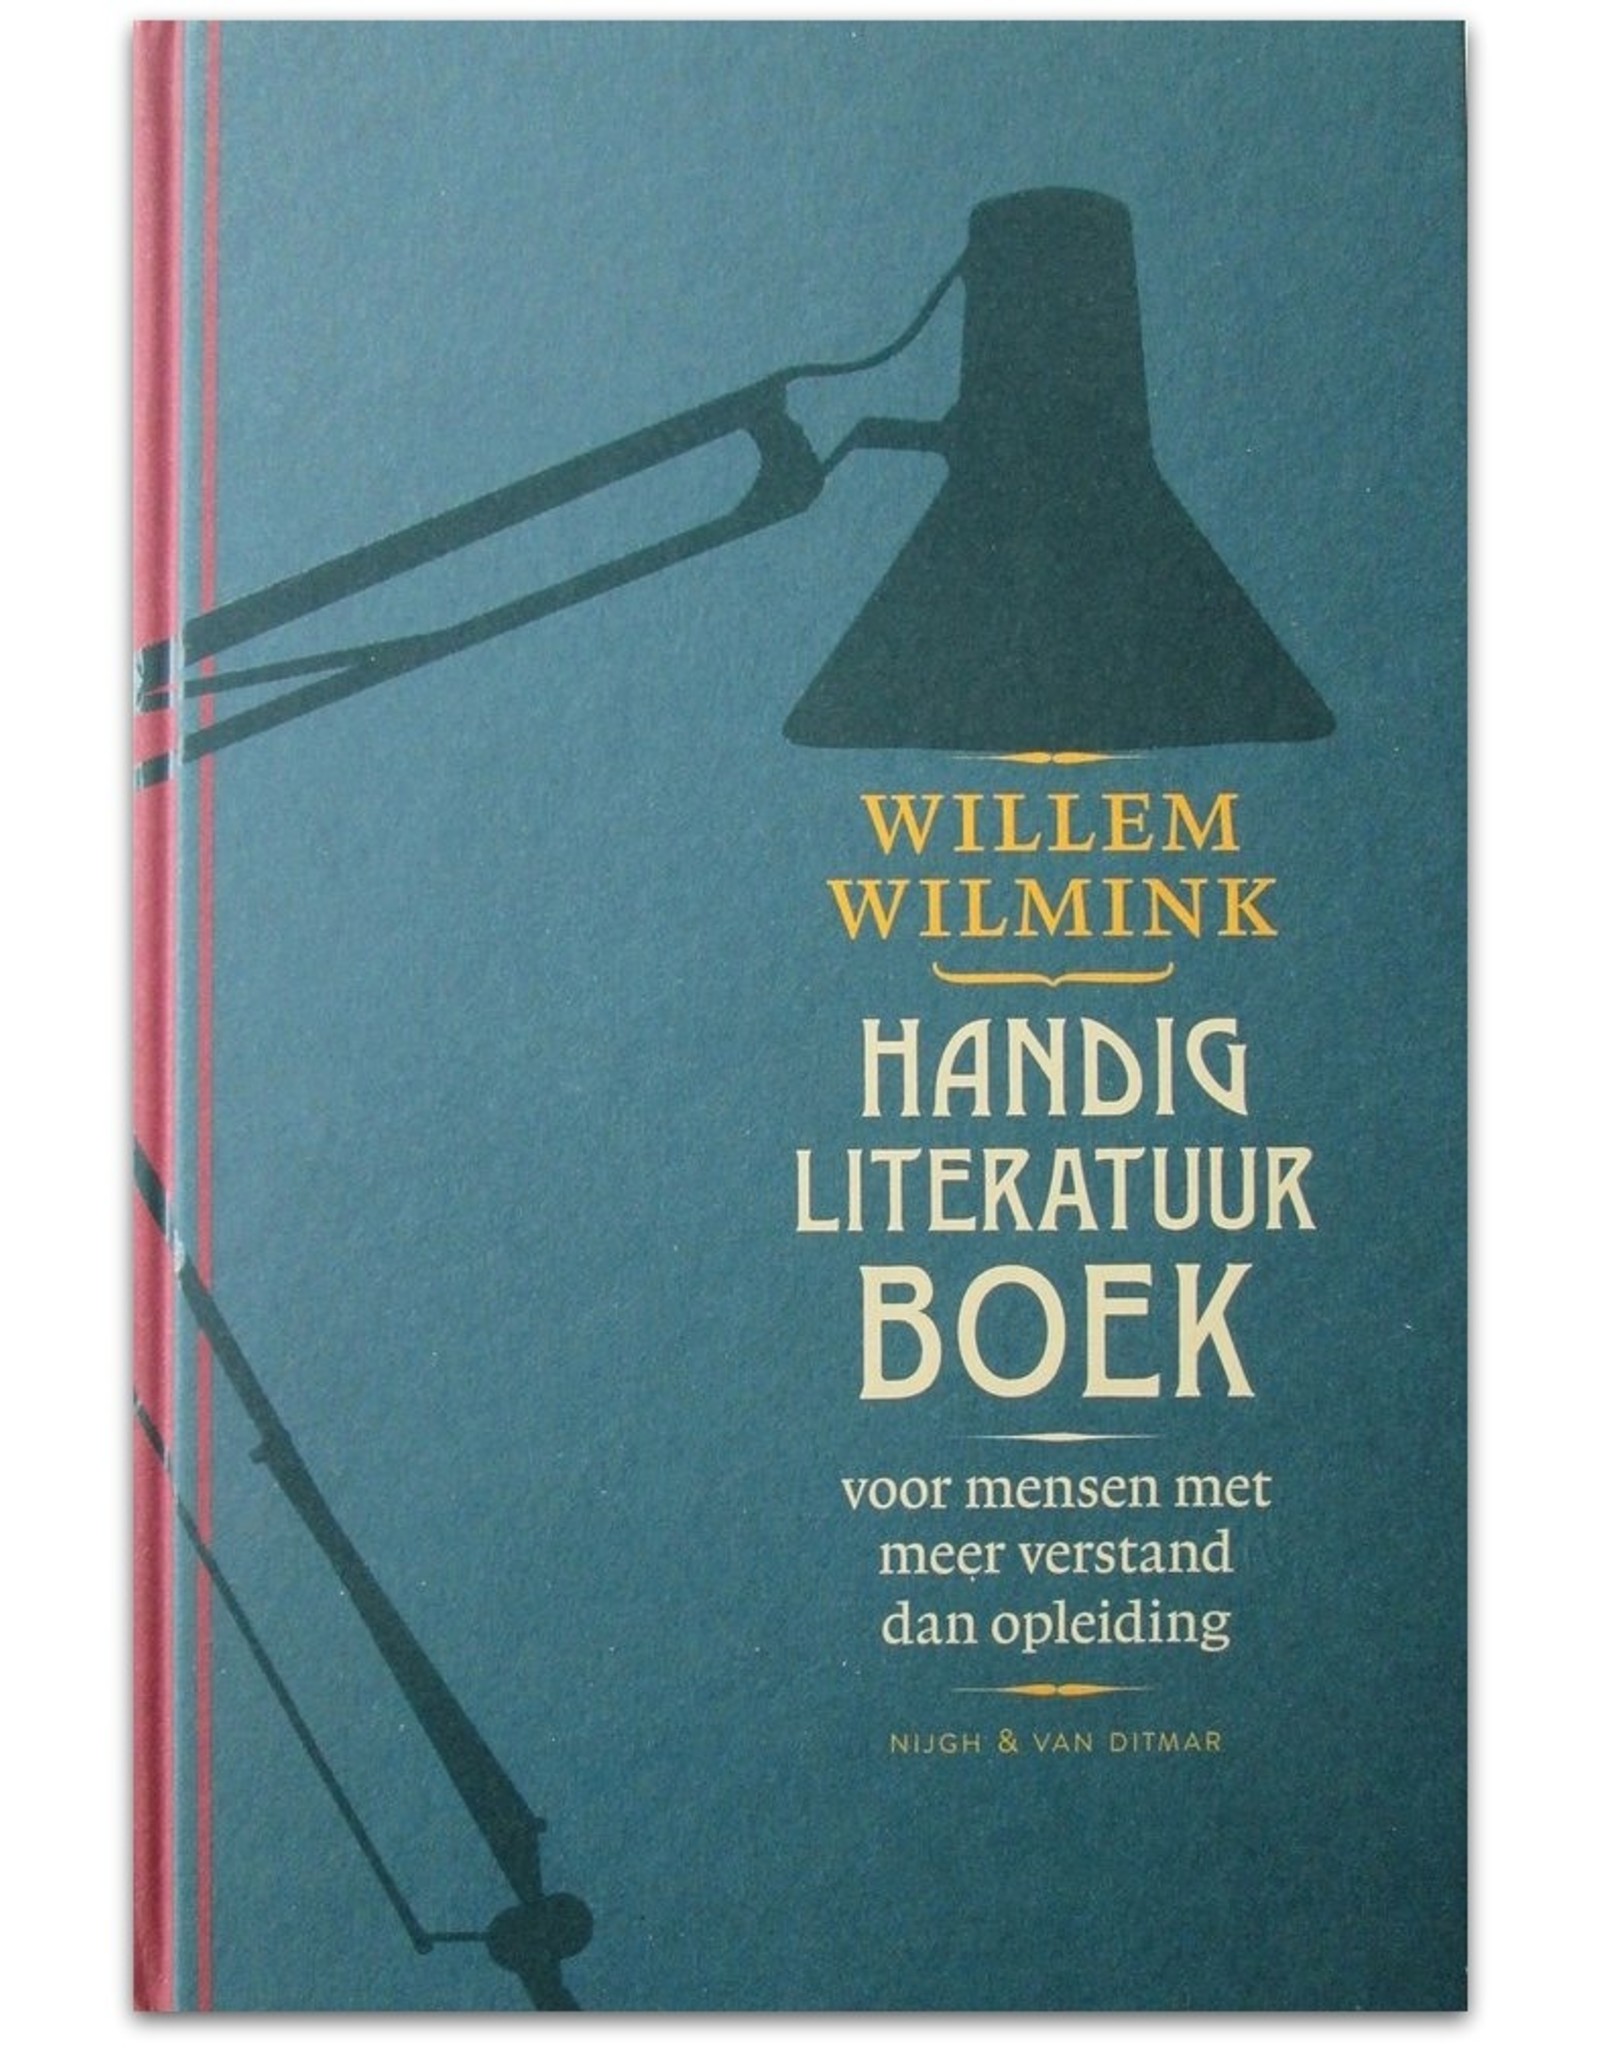 Willem Wilmink - Handig Literatuurboek: Voor mensen met meer verstand dan opleiding